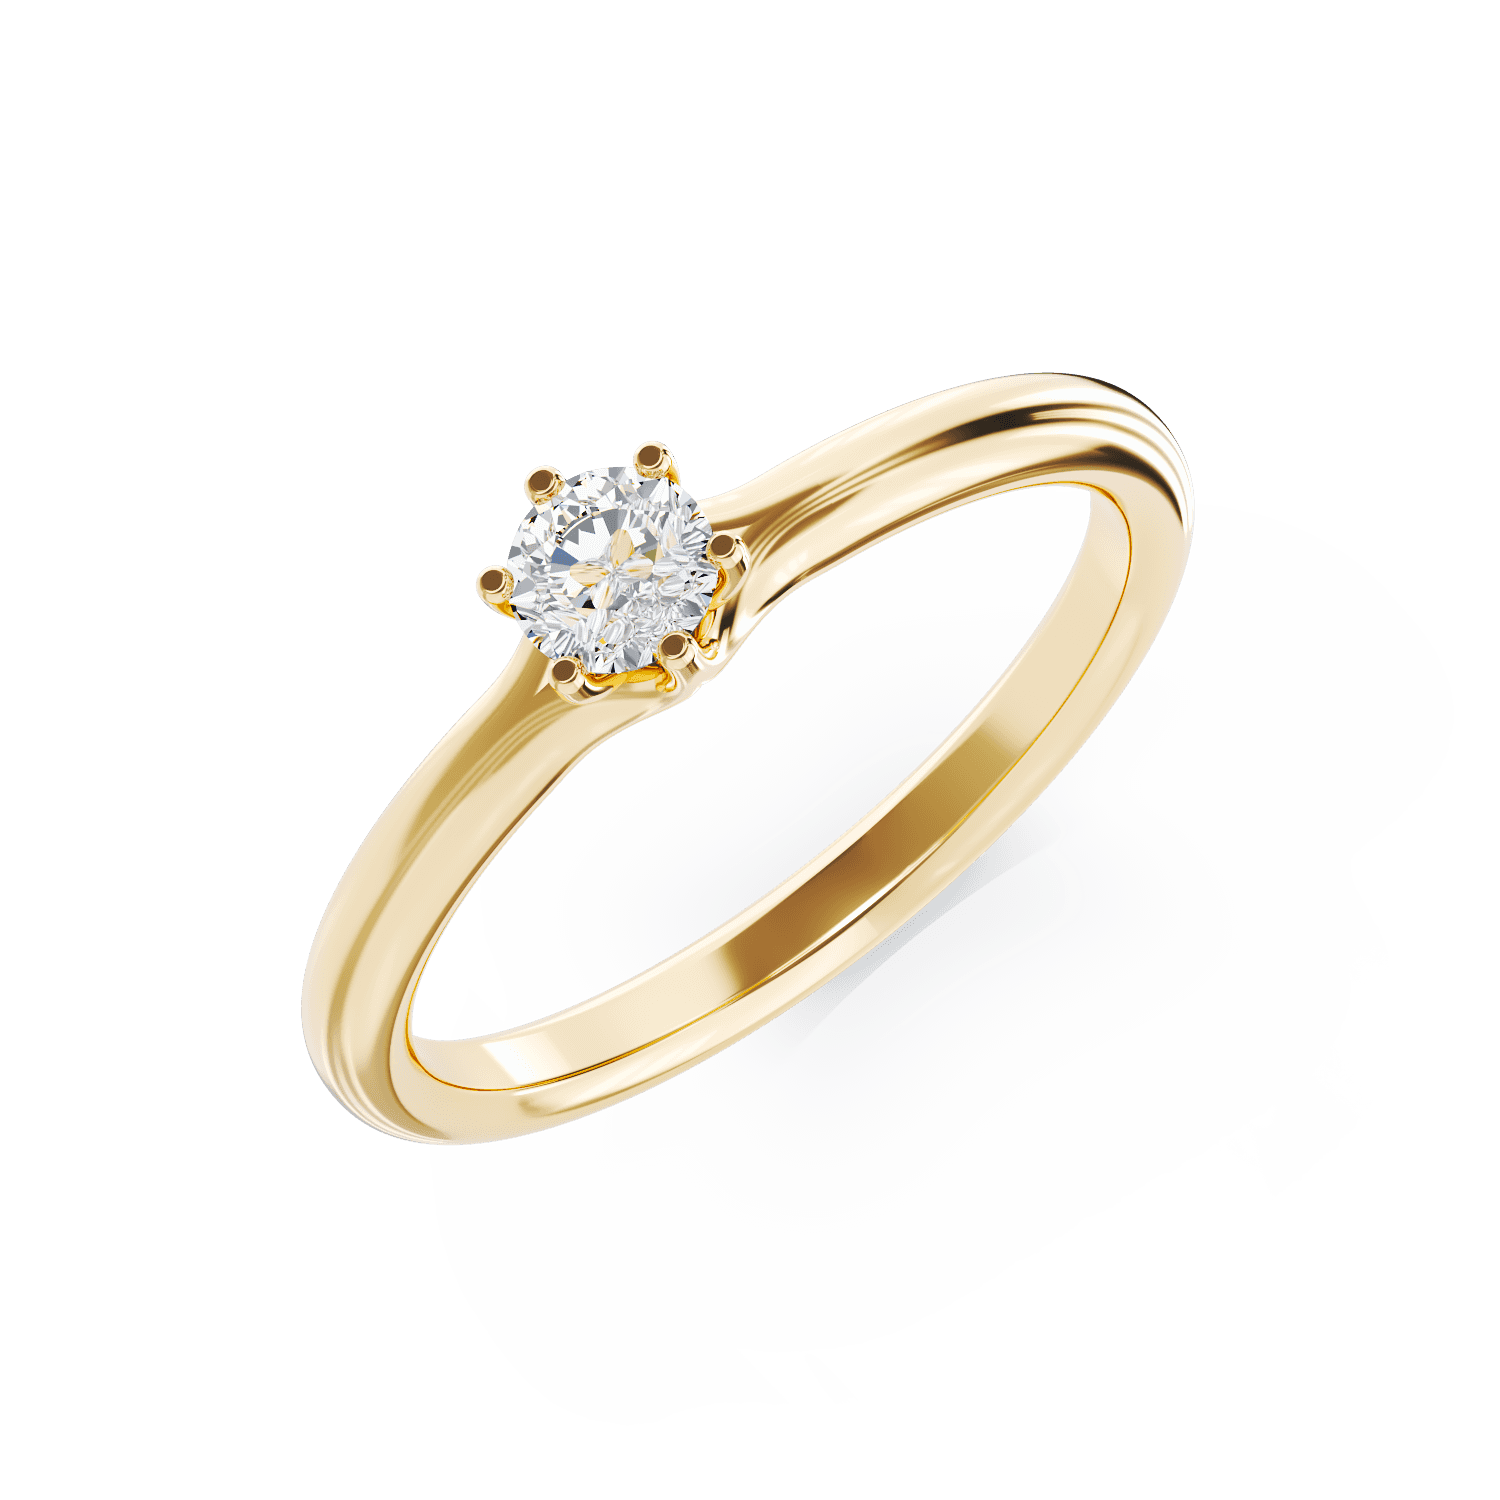 Eljegyzési gyűrű 18K-os sárga aranyból egy 0,24ct solitaire gyémánttal